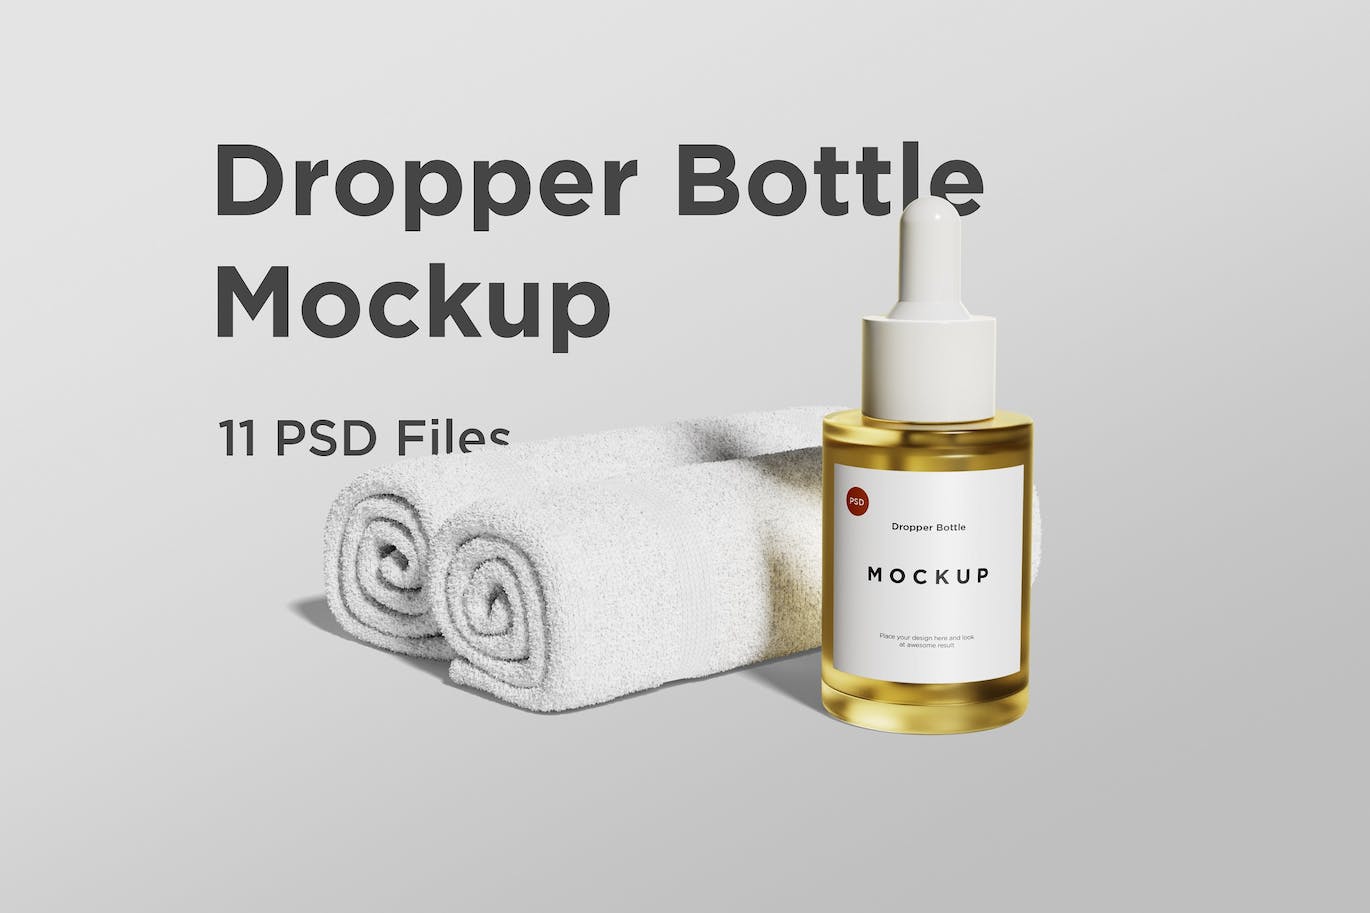 滴管瓶品牌包装设计样机 Dropper bottle mockup 样机素材 第1张